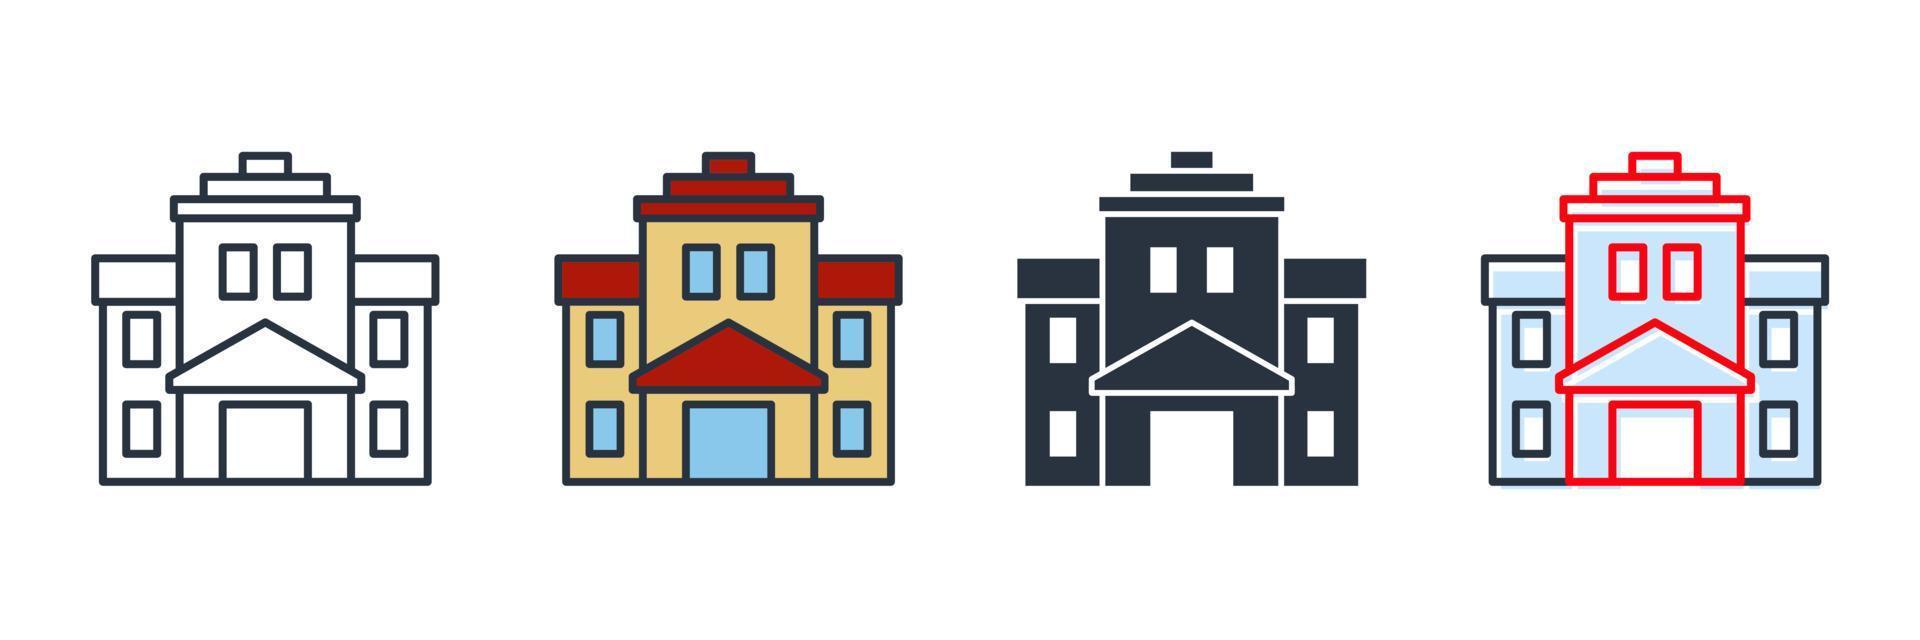 Ilustración de vector de logotipo de icono de edificio escolar. plantilla de símbolo de escuela secundaria para colección de diseño gráfico y web